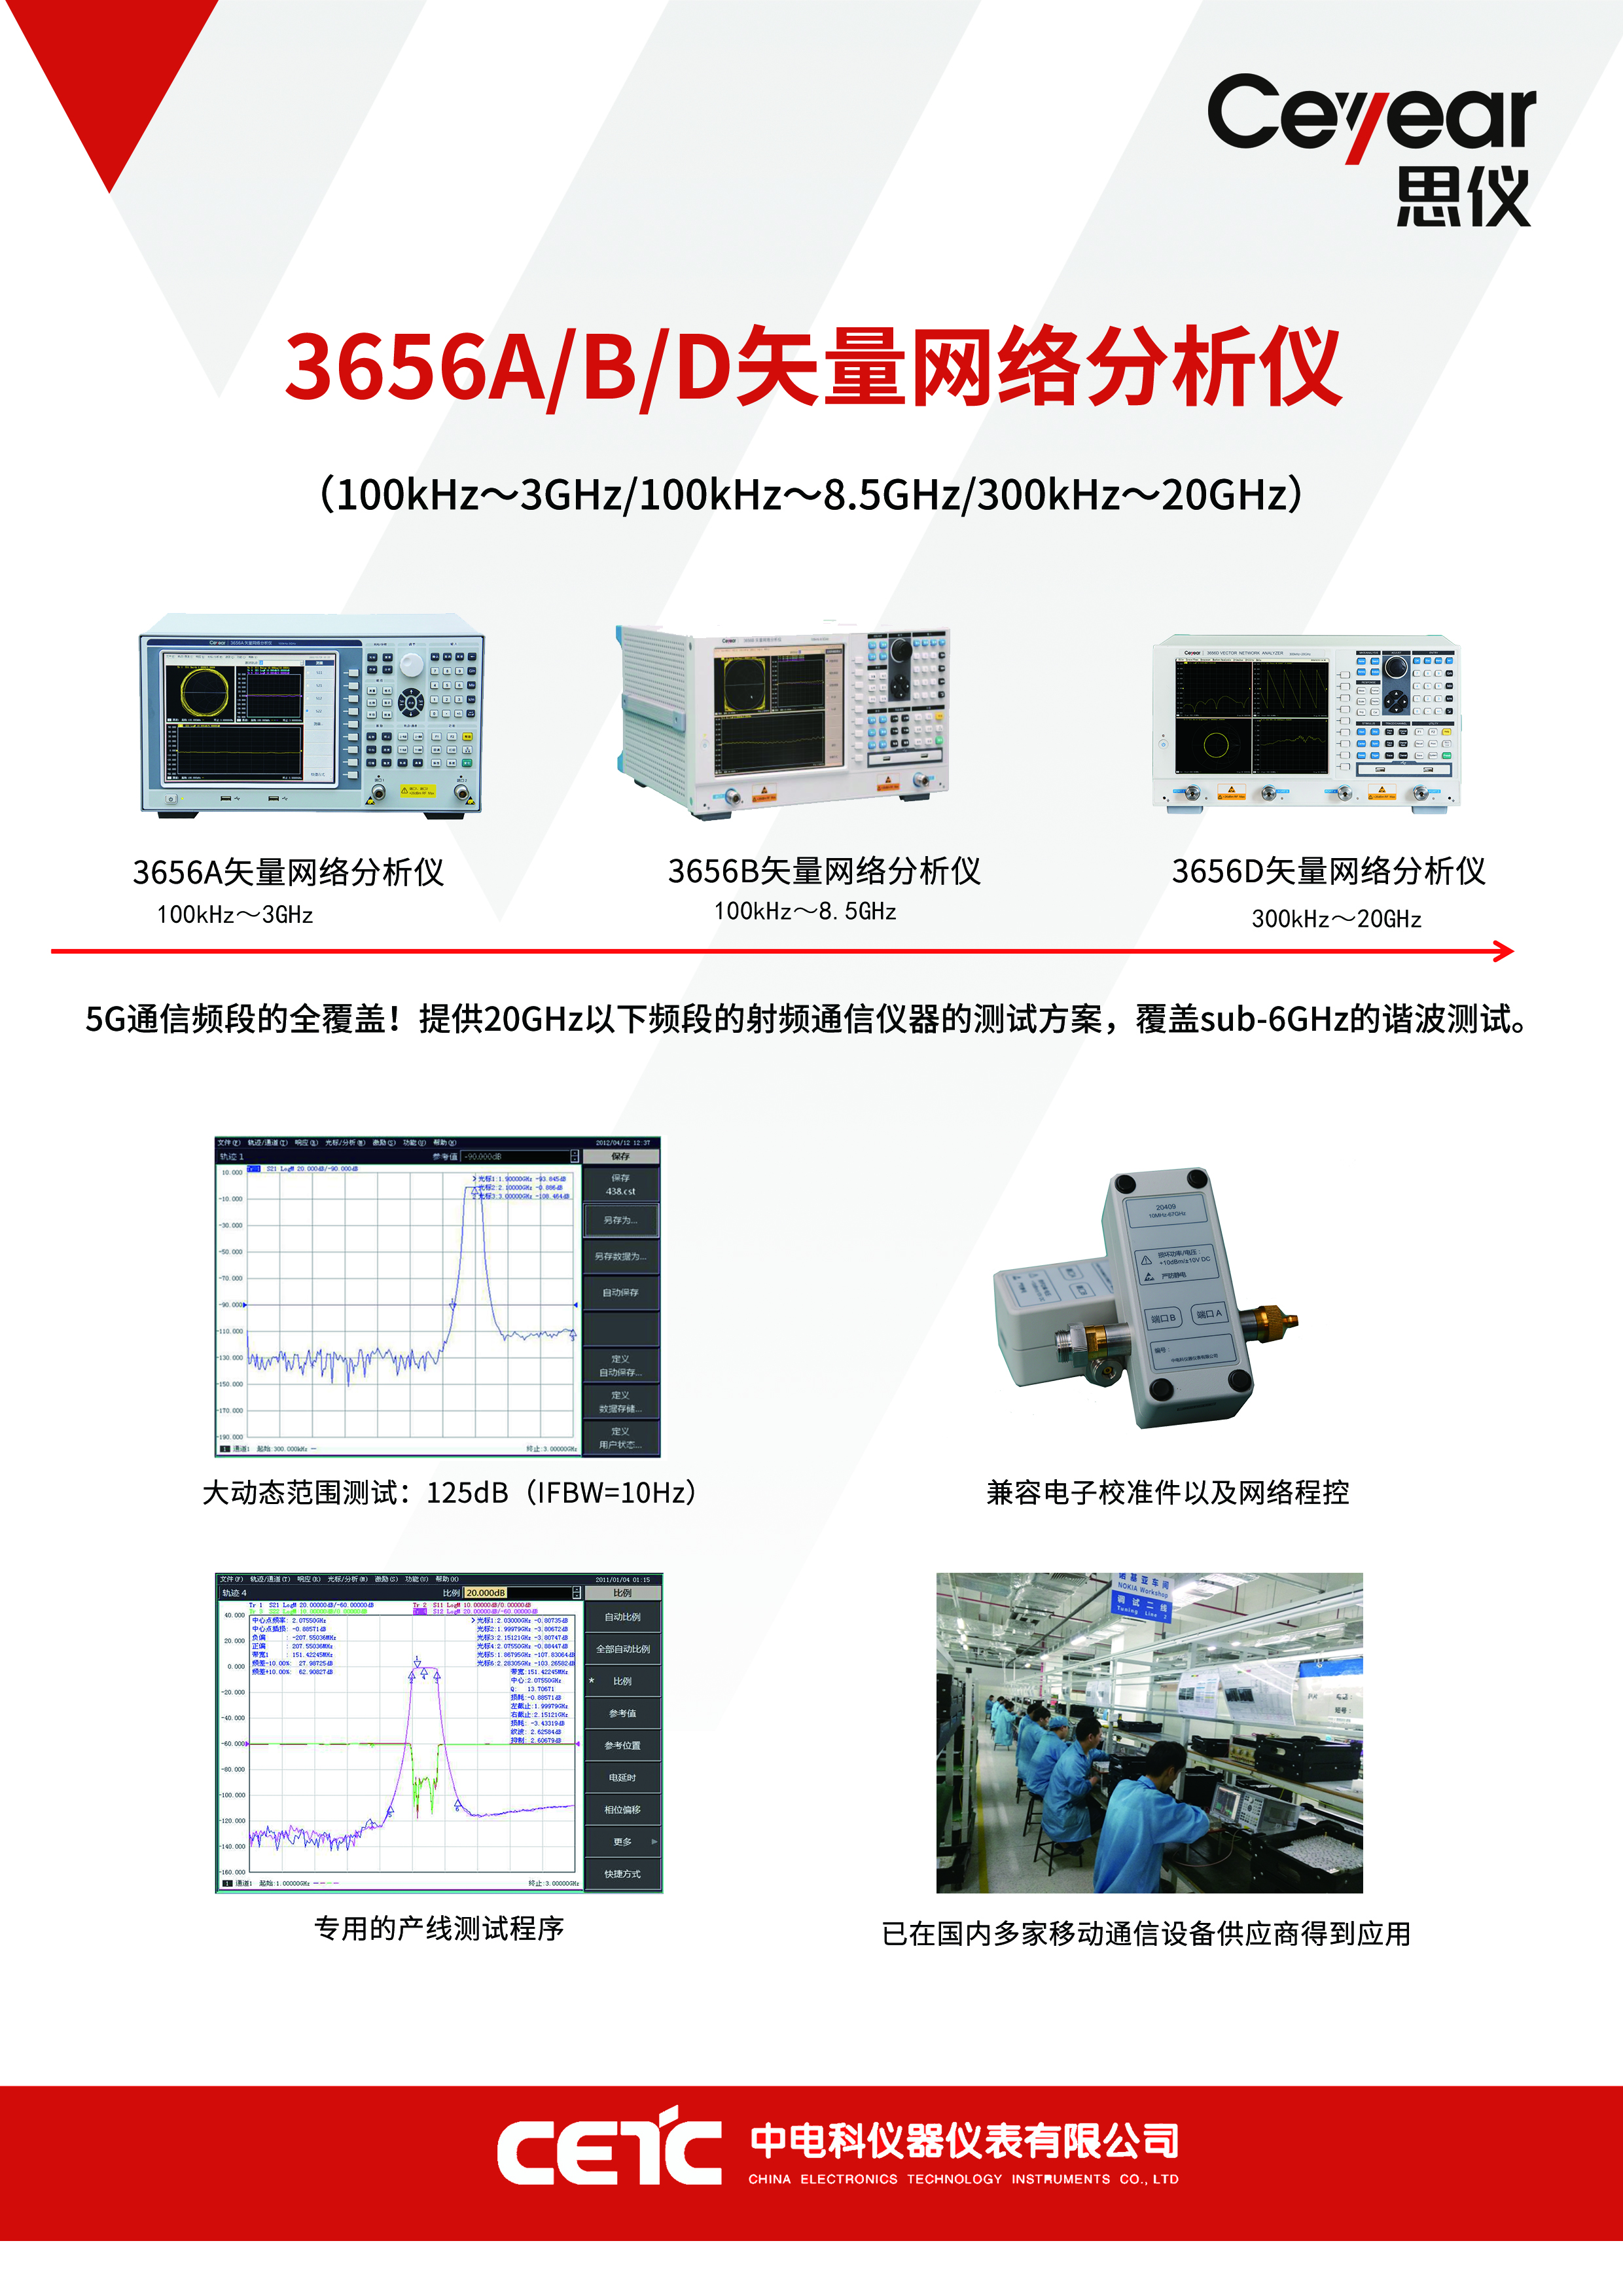 3656A/B/D矢量网络分析仪 100kHZ~20GHz